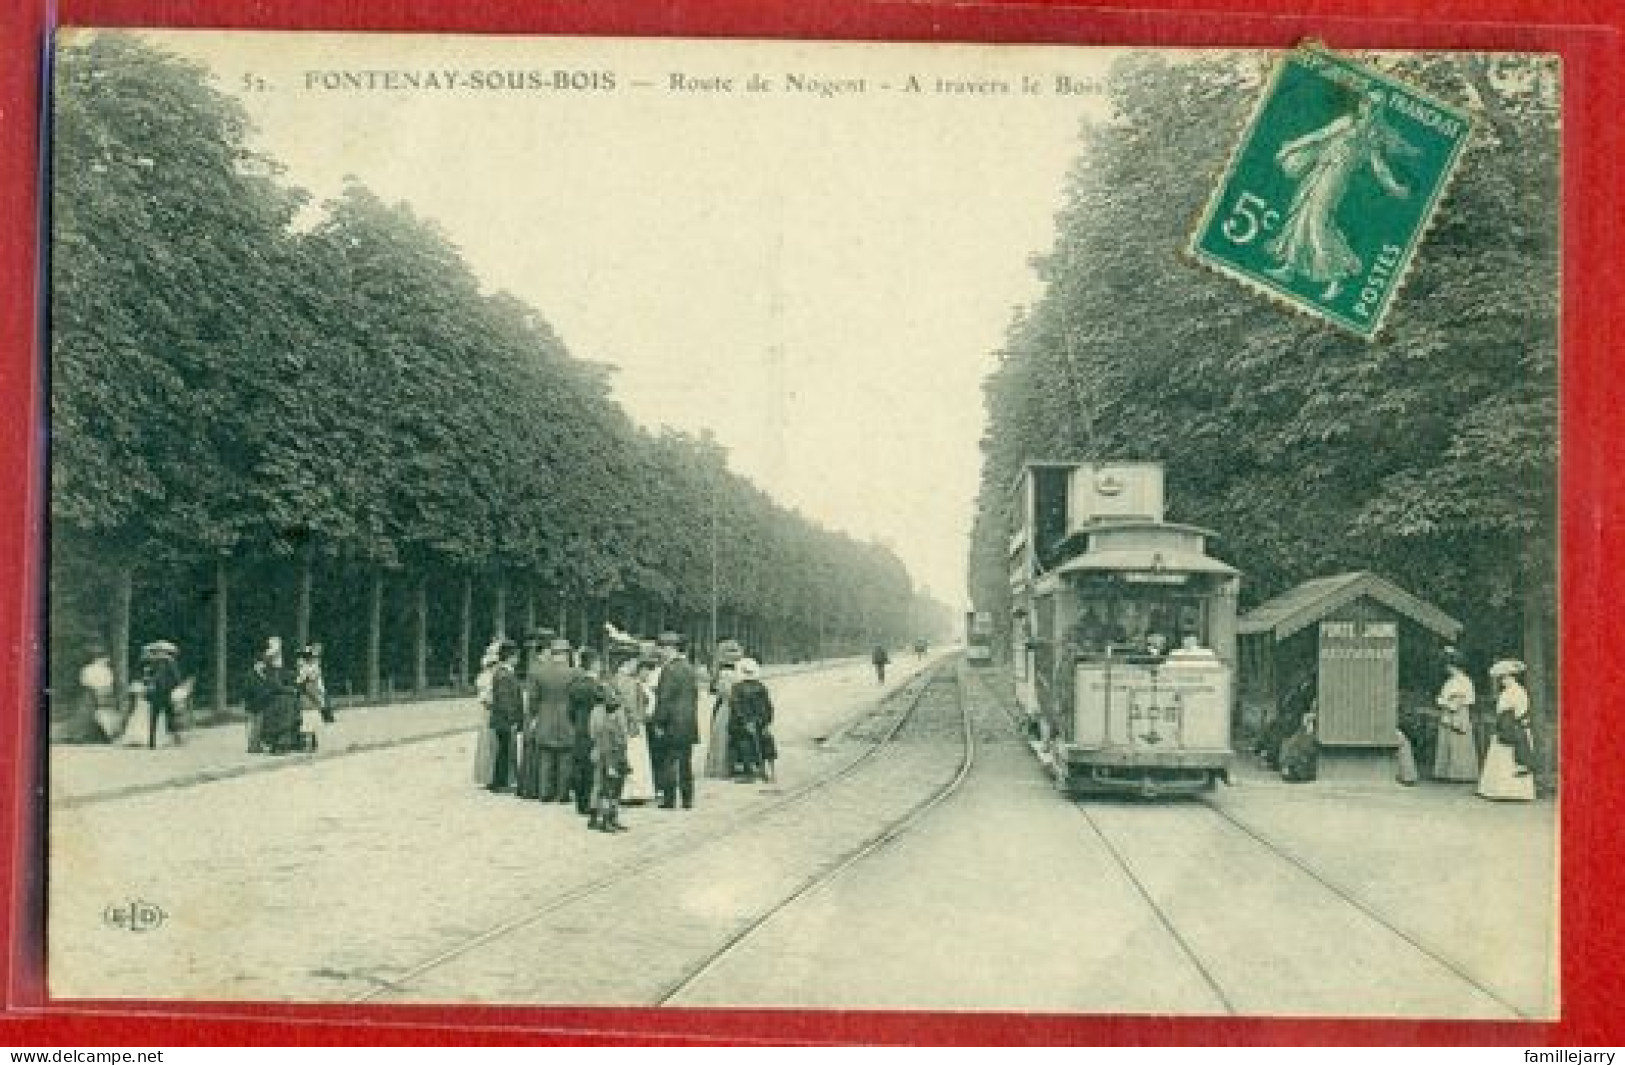 7005 - FONTENAY SOUS BOIS - ROUTE DE NOGENT - A TRAVERS LE BOIS - Fontenay Sous Bois